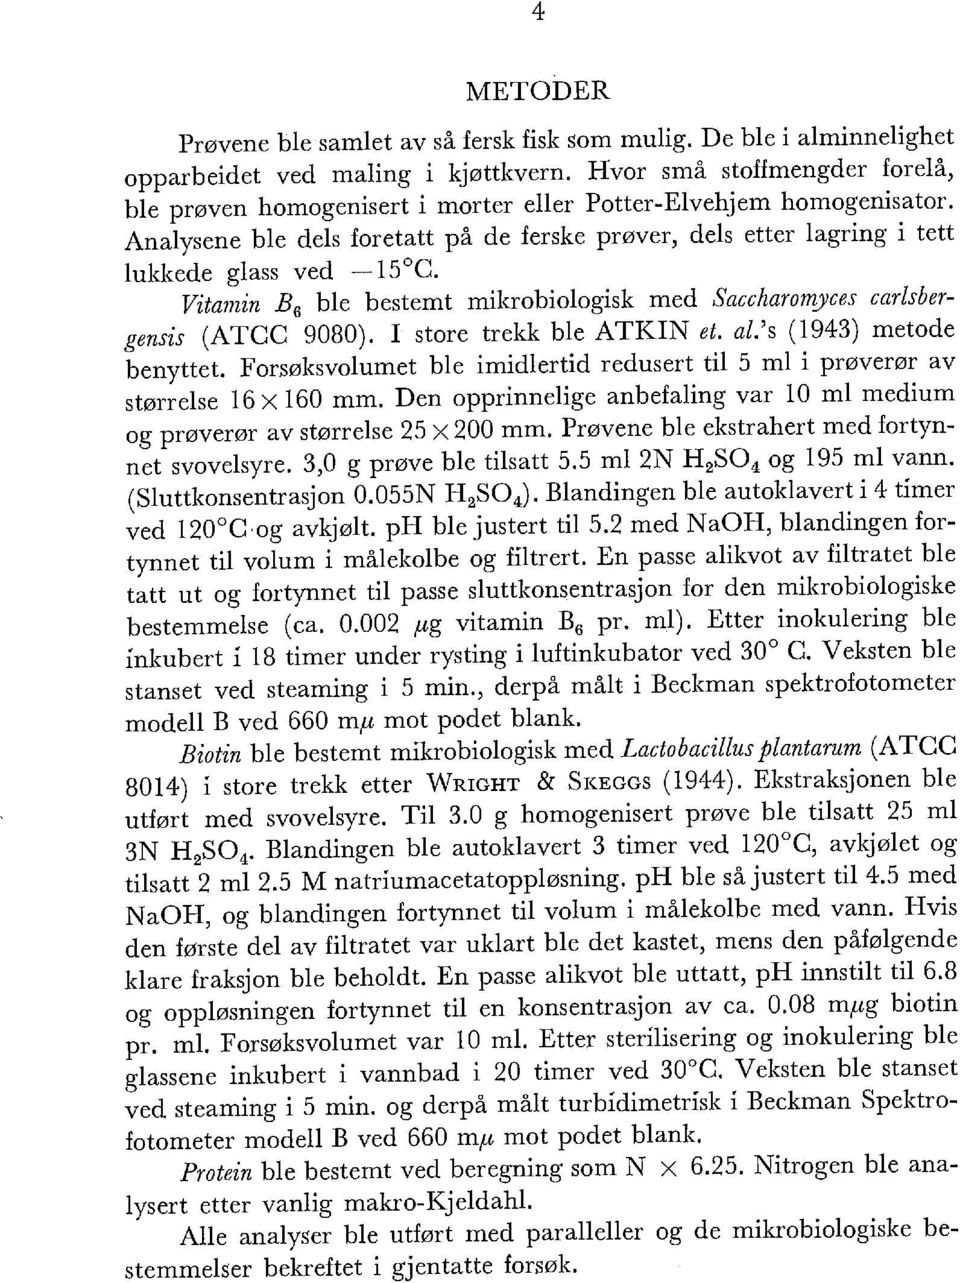 Vitamin B 6 ble bestemt mikrobiologisk med Saccharomyces carlsbergensis (ATCC 9080). I store trekk ble ATKIN et. al.'s (1943) metode benyttet.